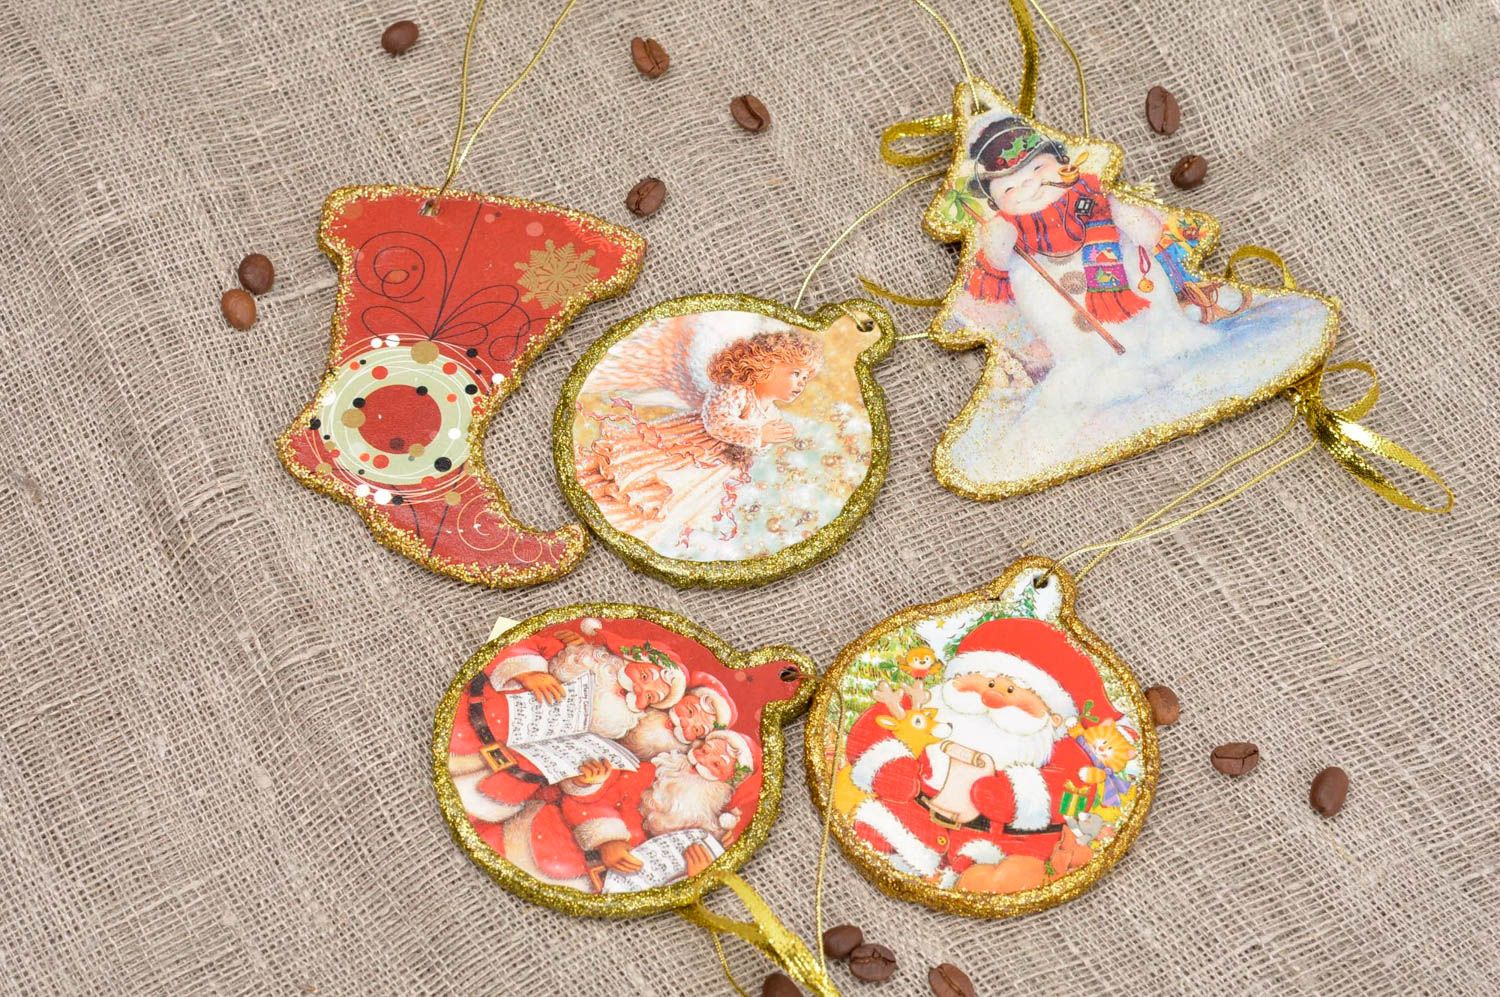 Decoraciones navideñas artesanales 5 adornos de Navidad regalos originales foto 1